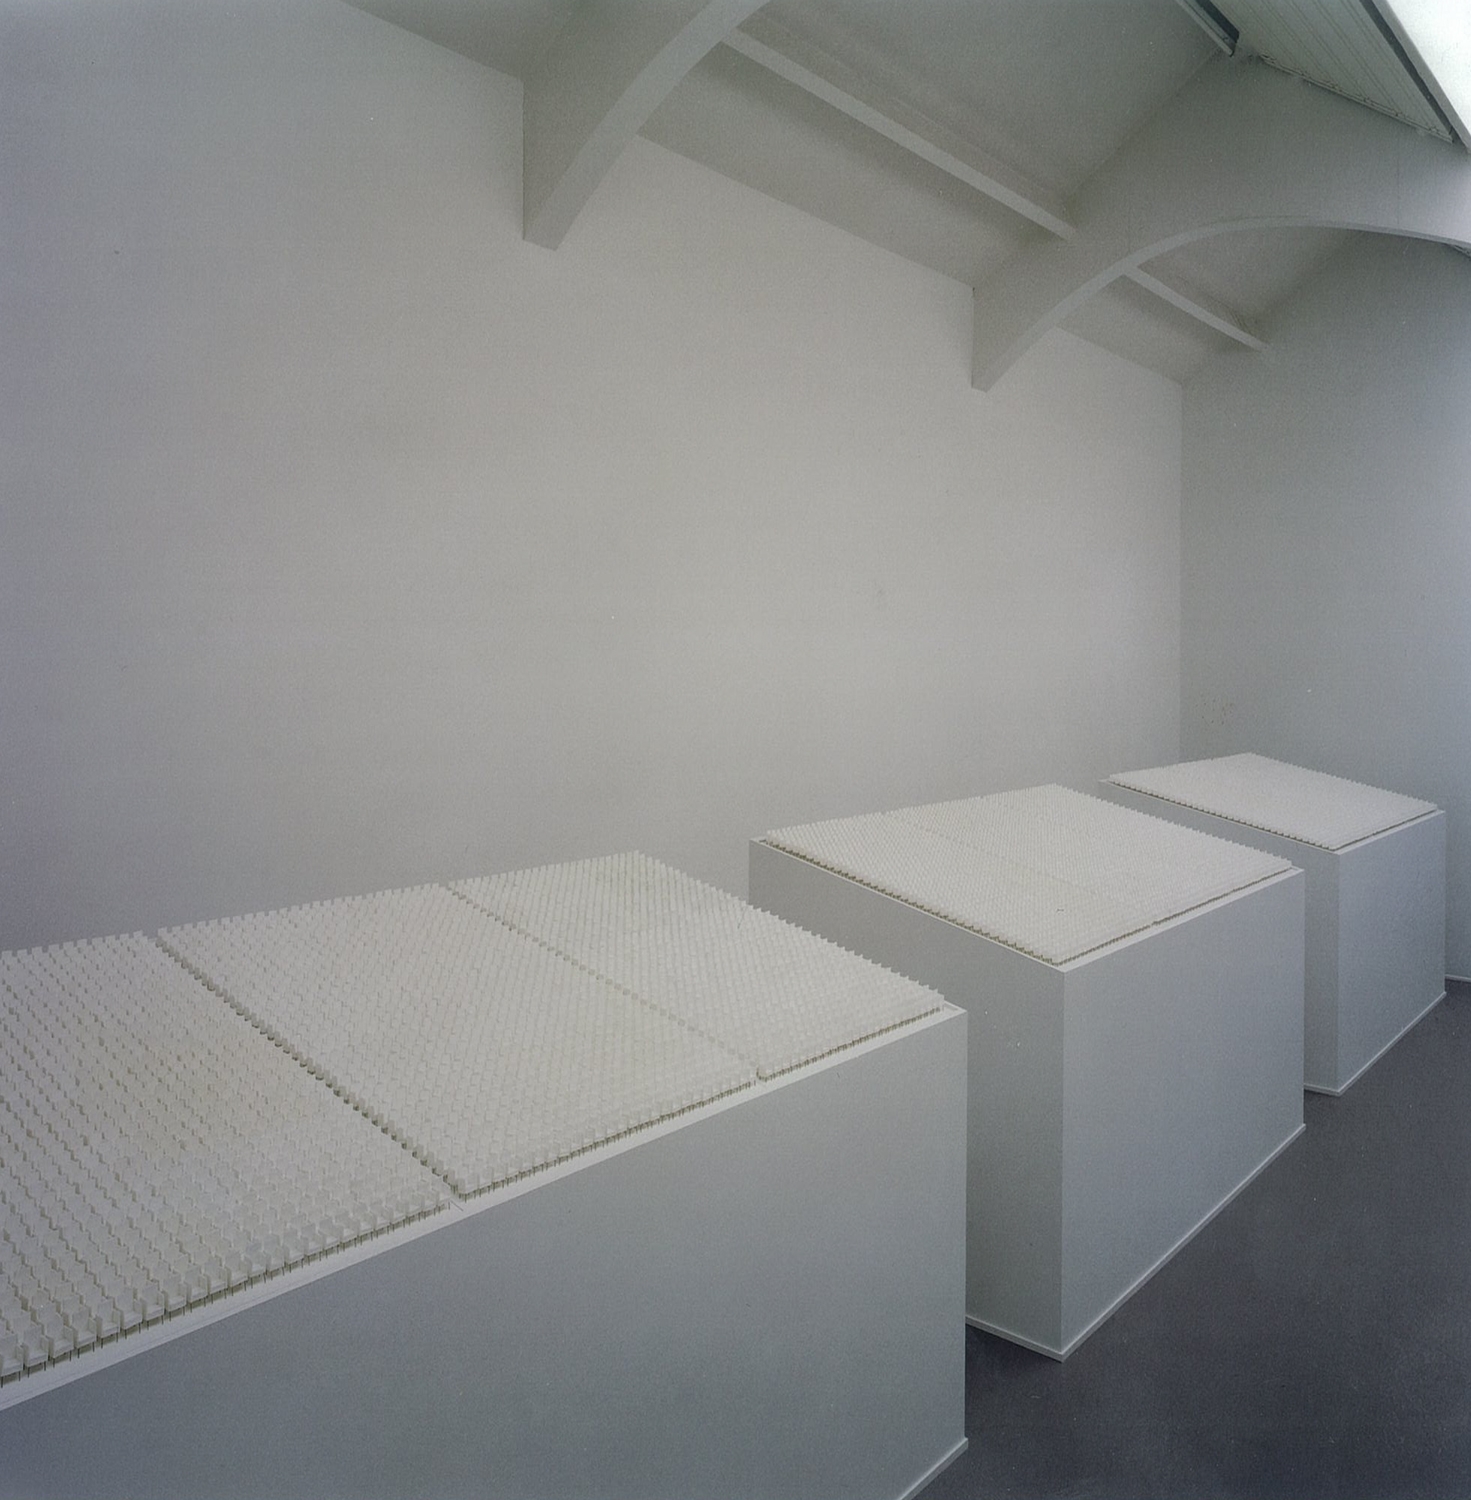 Bregje de Heer, 'Werk', exhibition view, 2004 | Werk | Bregje de Heer